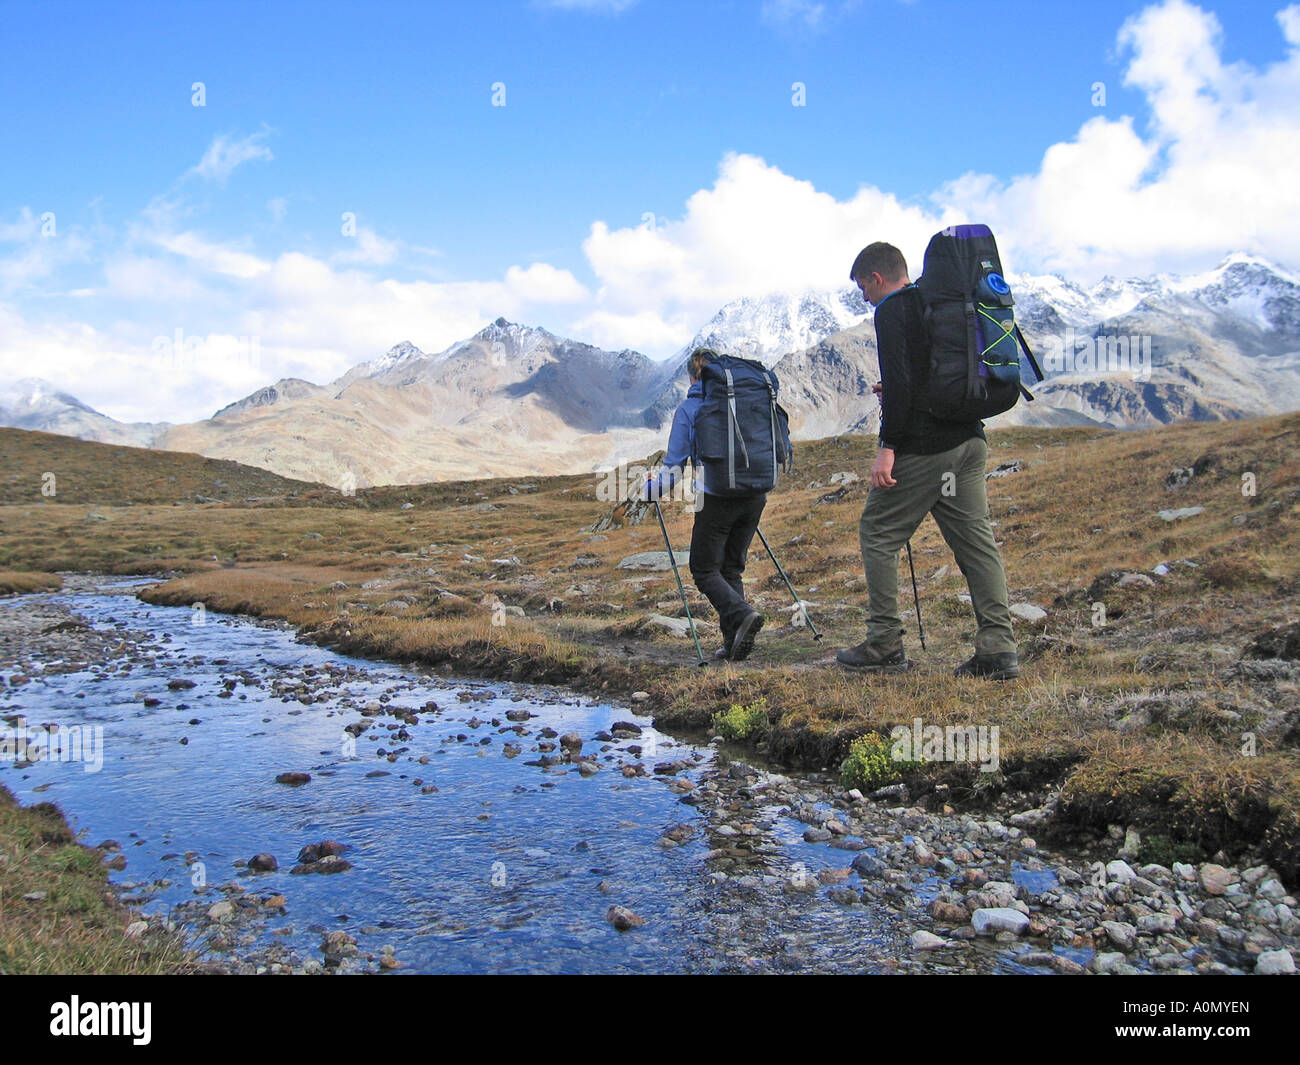 La randonnée alpine Walker's Haute Route - un trek alpin de Chamonix, France à Zermatt, Suisse. Photo David Gale Banque D'Images